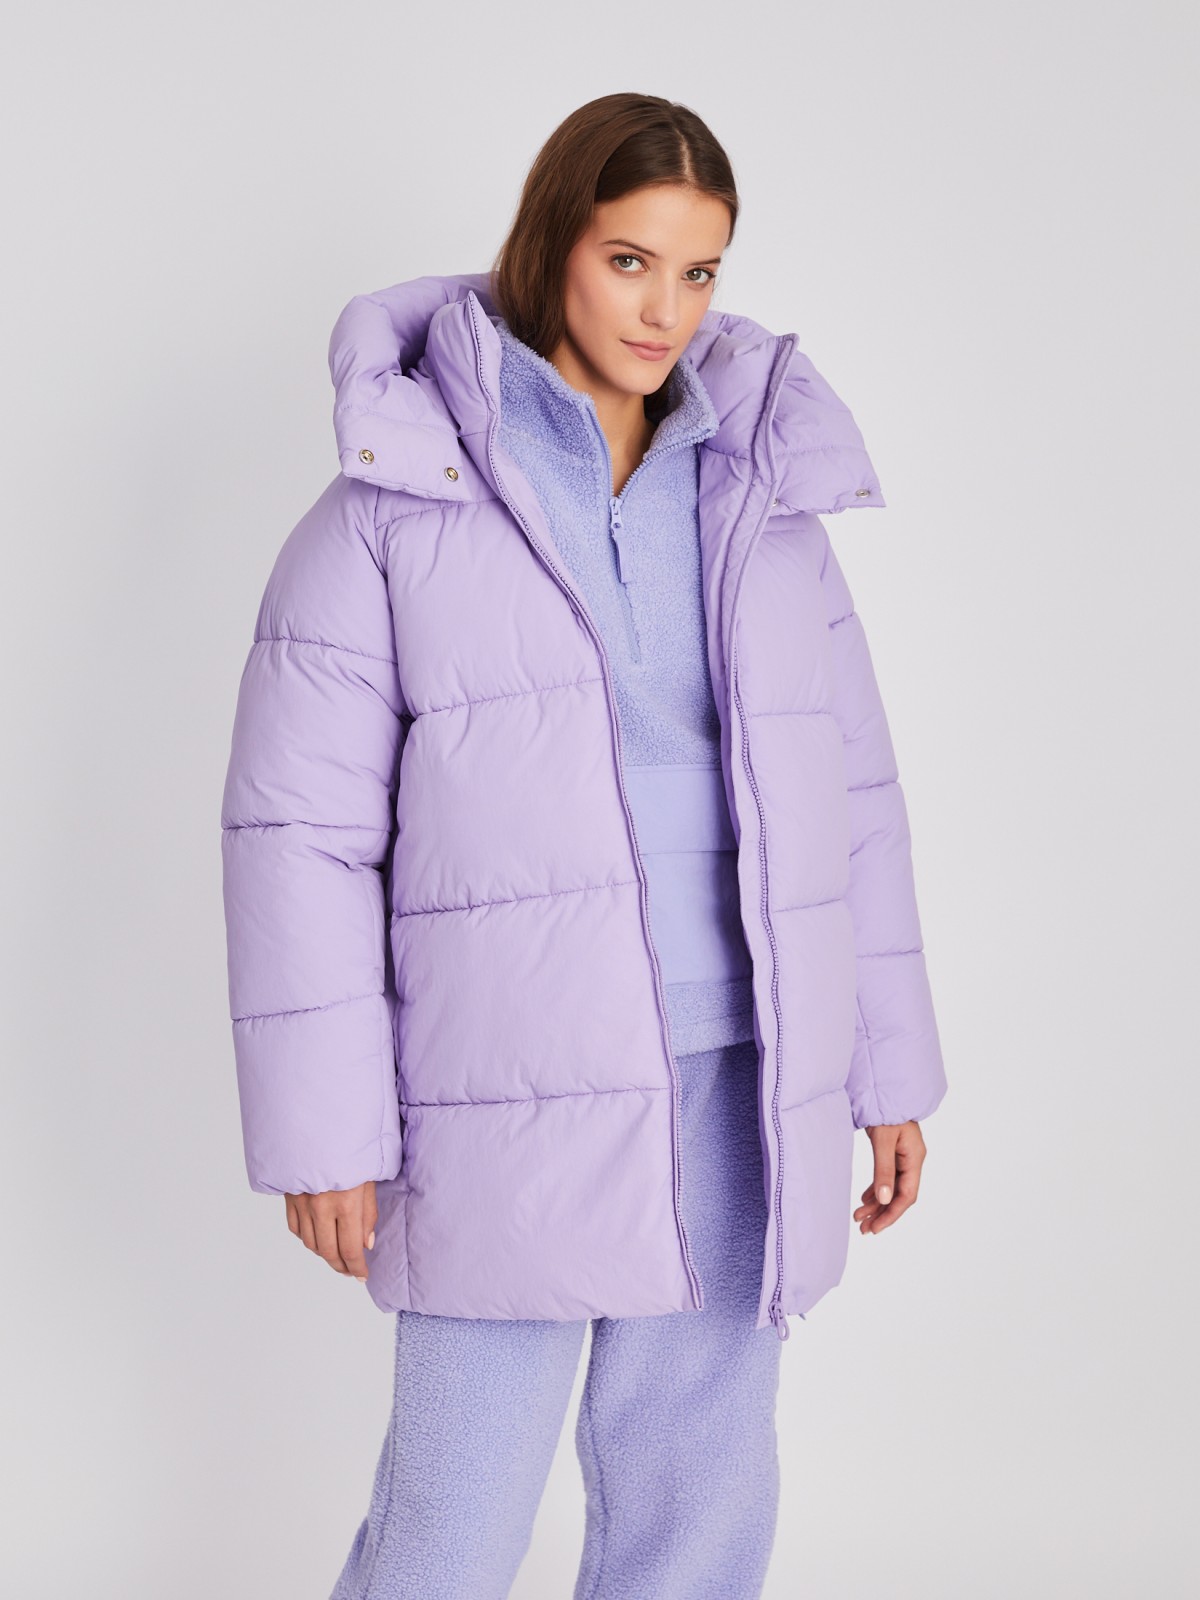 Тёплая куртка-пальто оверсайз силуэта с капюшоном zolla 02342520L054, цвет фиолетовый, размер S